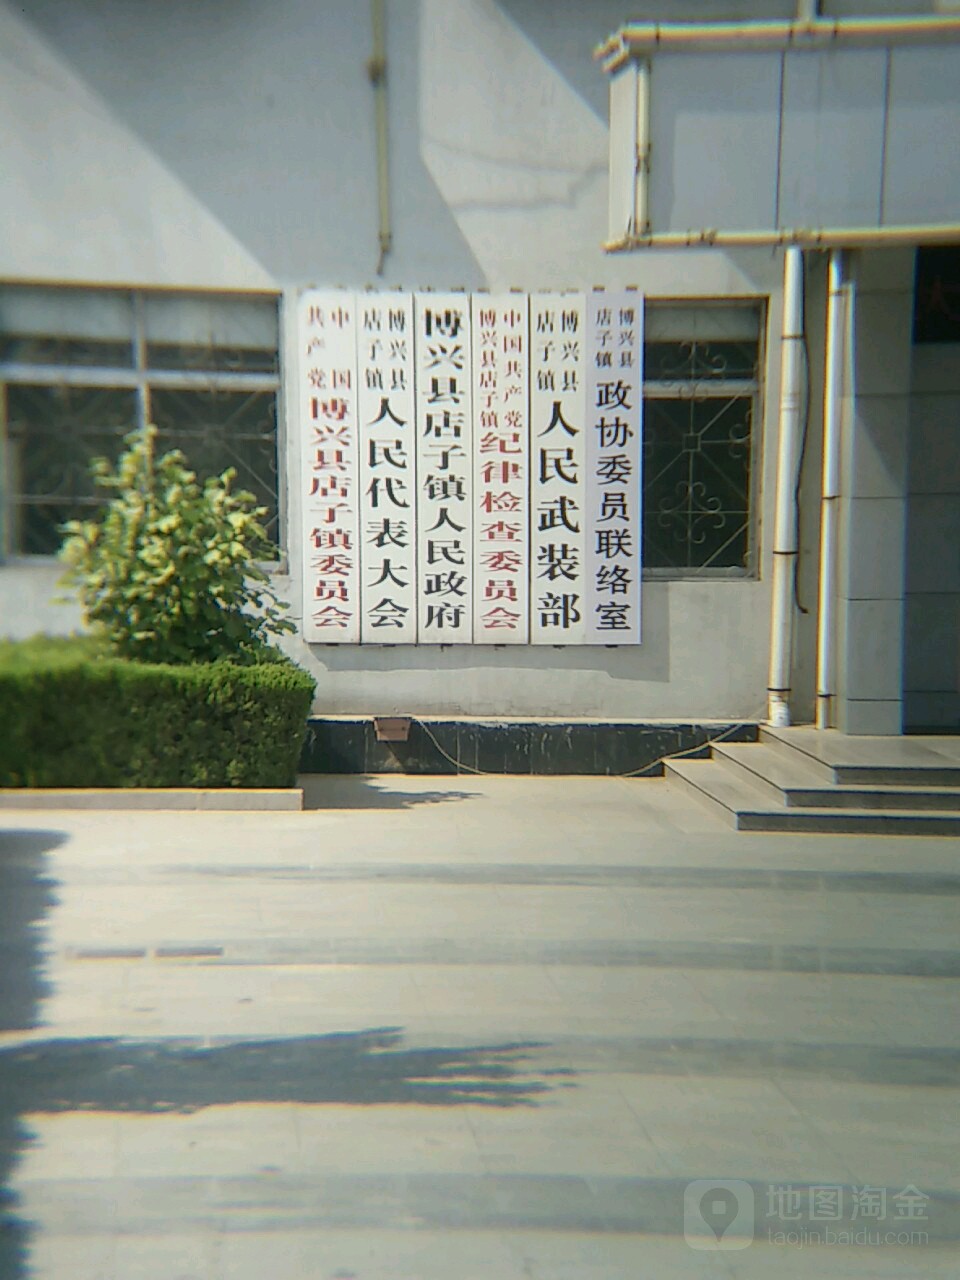 博兴县店子镇潍高路29号